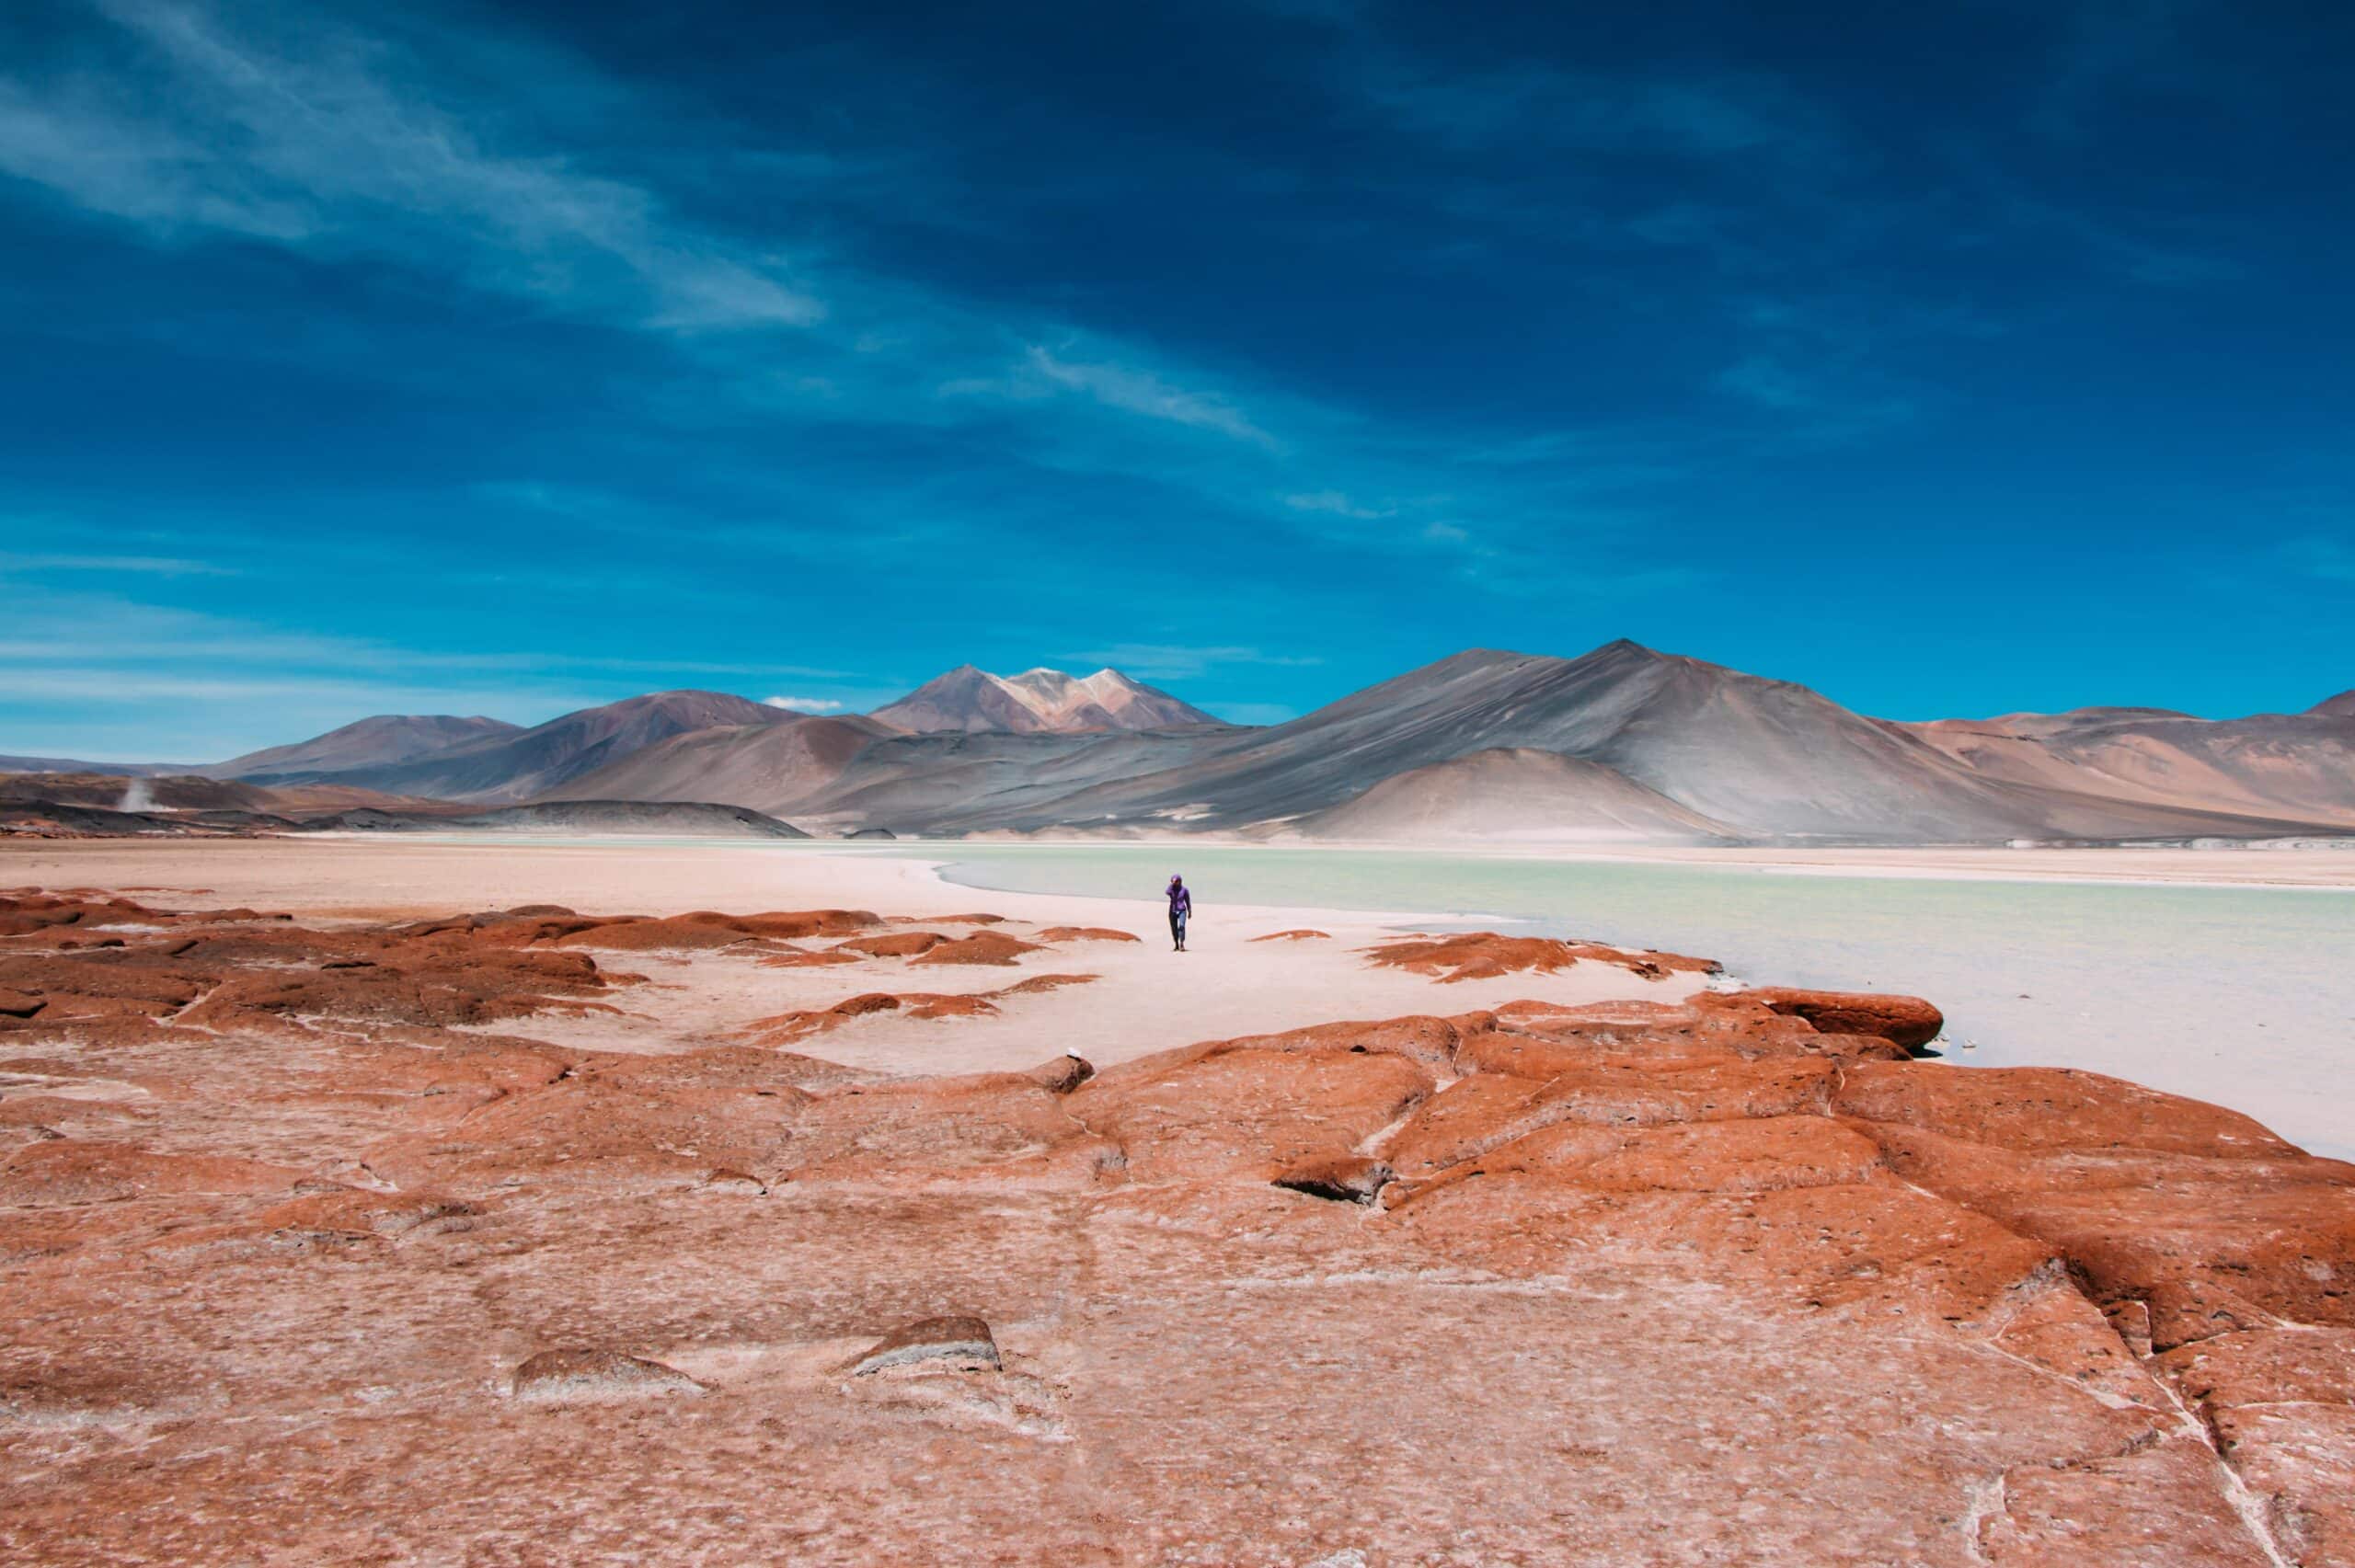 Vista do Deserto do Atacama, Chile com montanhas ao fundo, lago e um homem andando em meio a paisagem durante o dia.